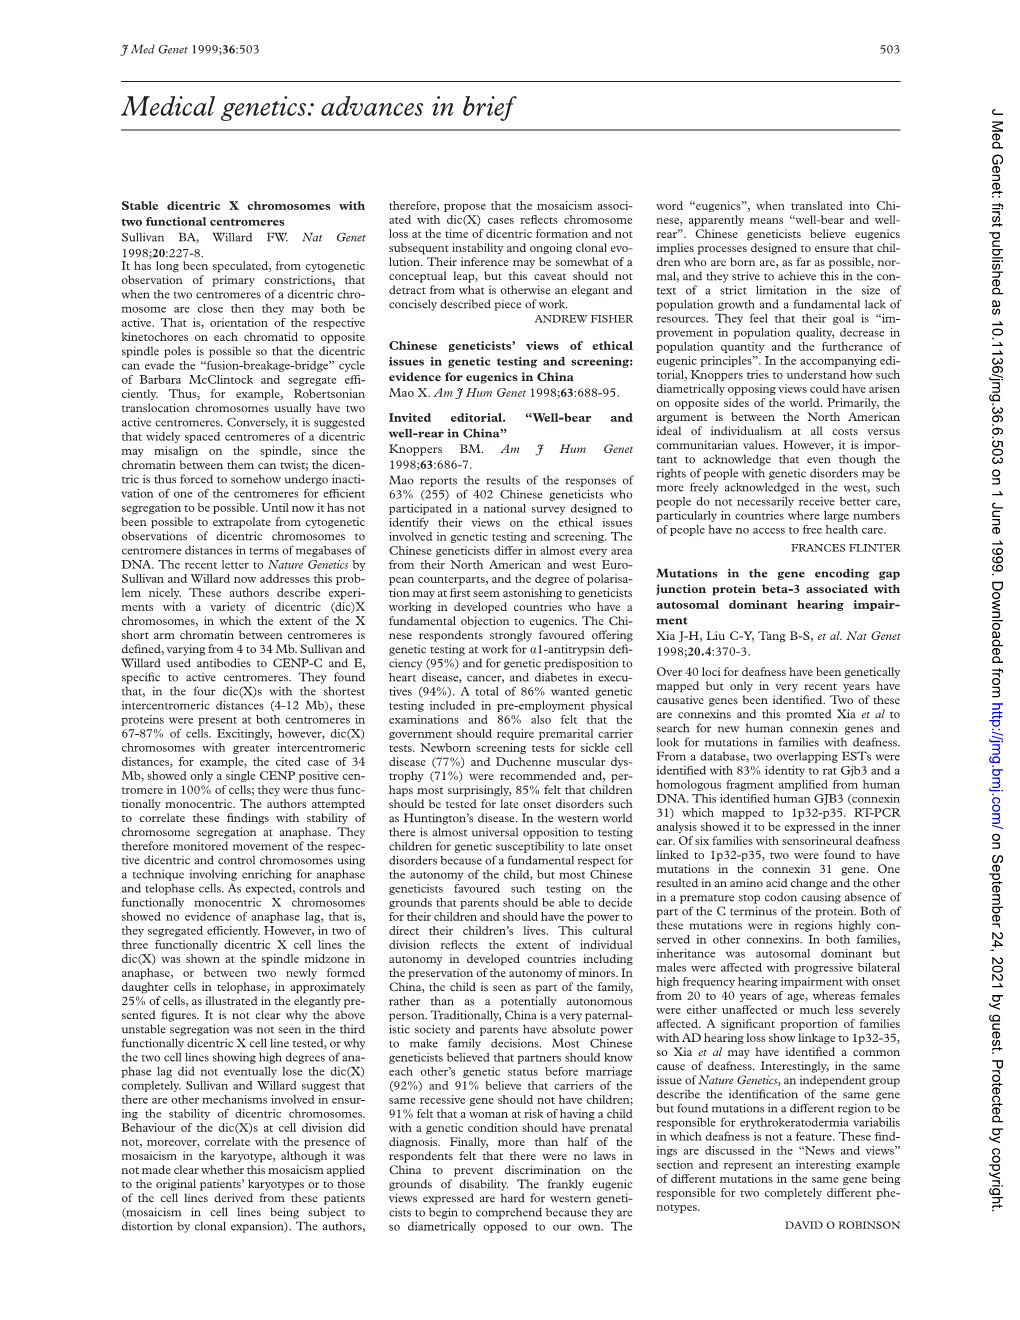 Medical Genetics: Advances in Brief J Med Genet: First Published As 10.1136/Jmg.36.6.503 on 1 June 1999